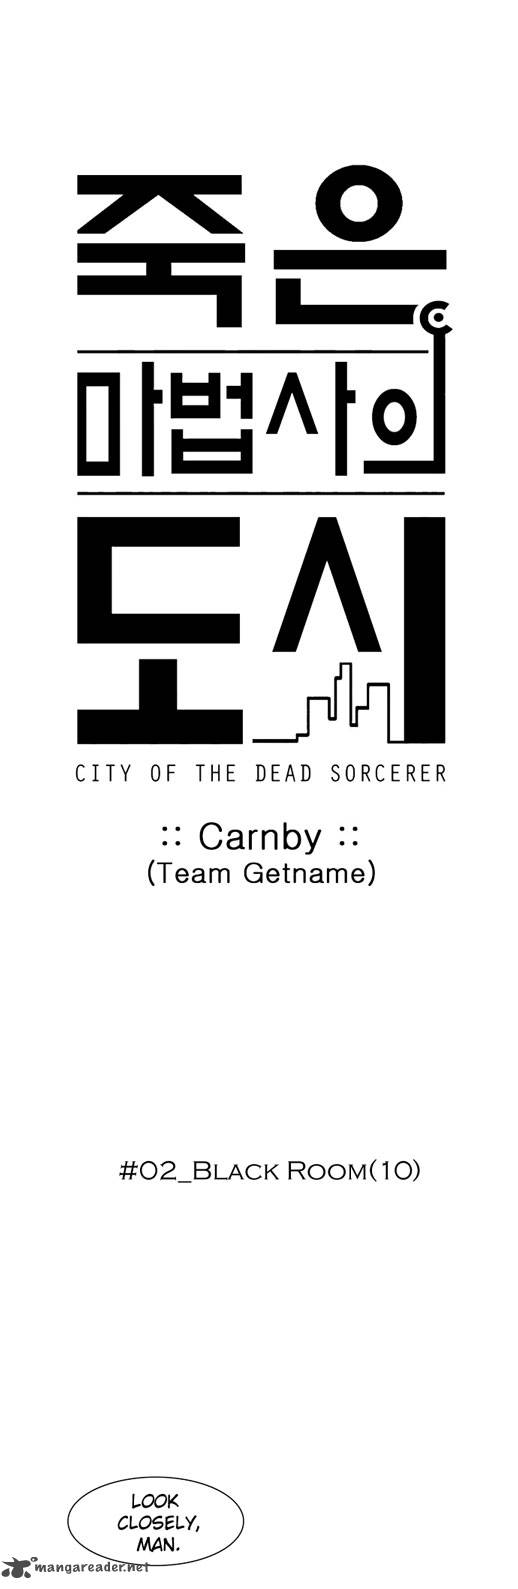 City Of Dead Sorcerer 23 21